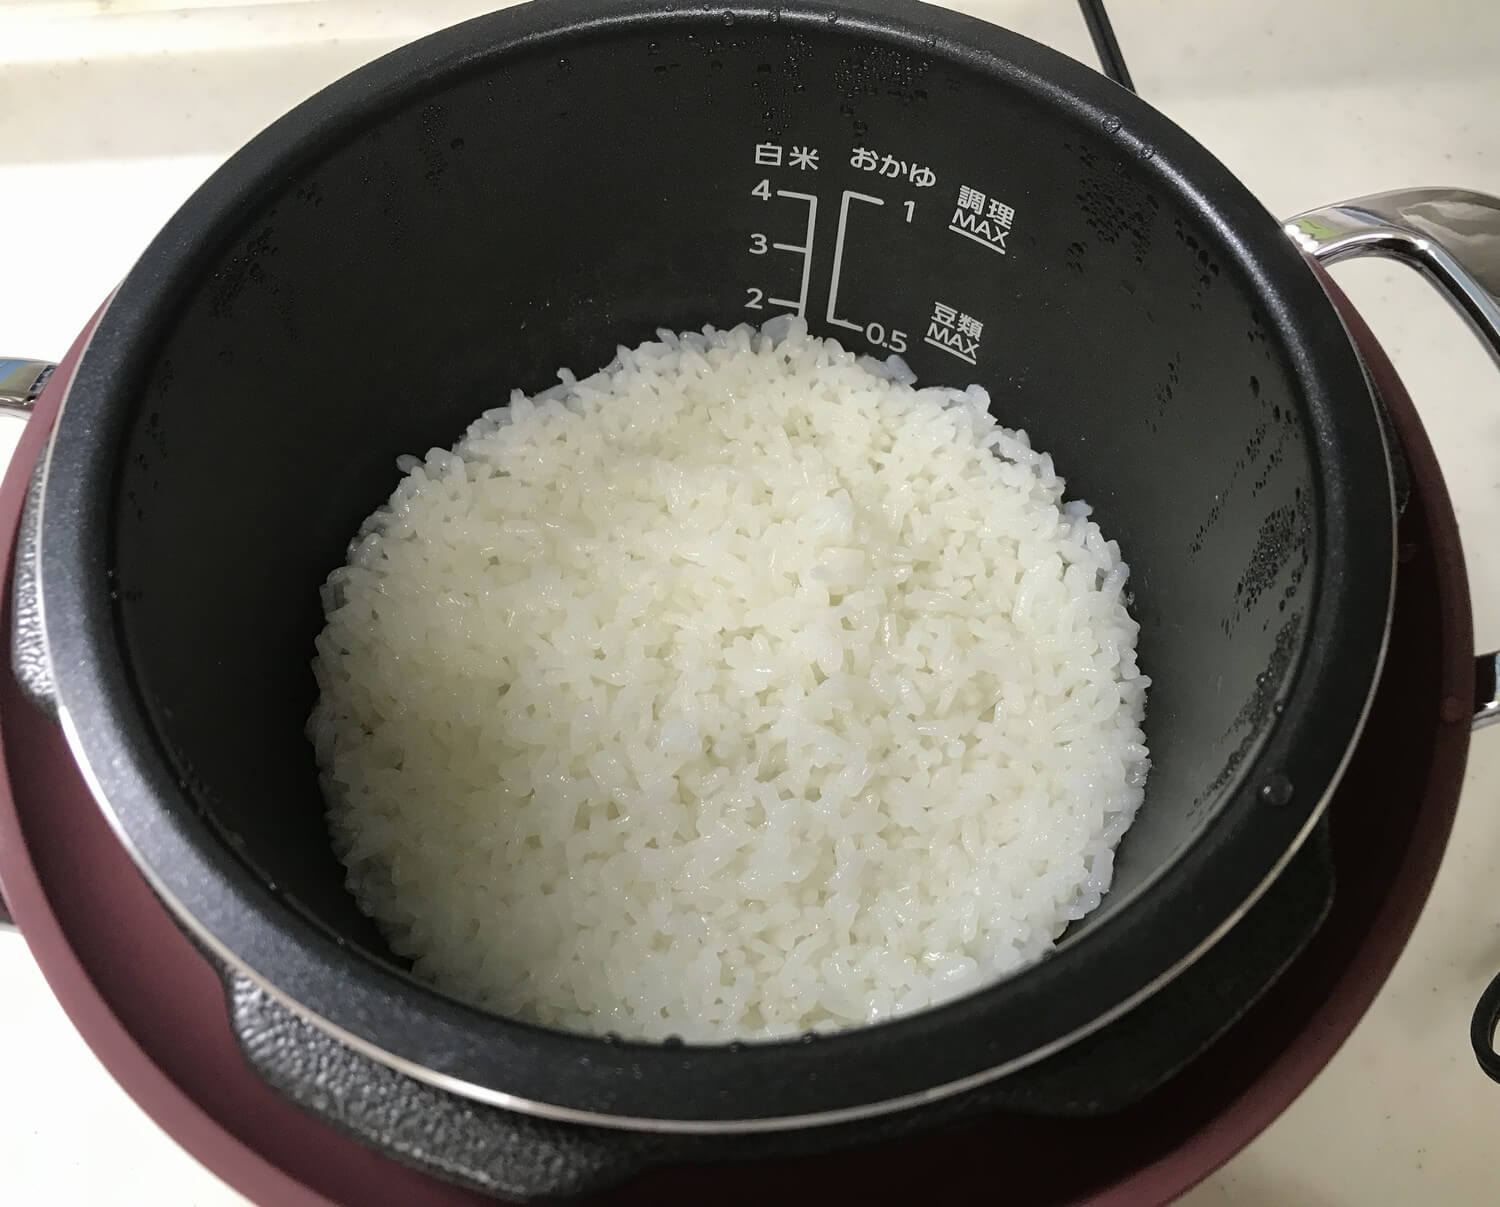 2合の白米が炊き上がった様子。